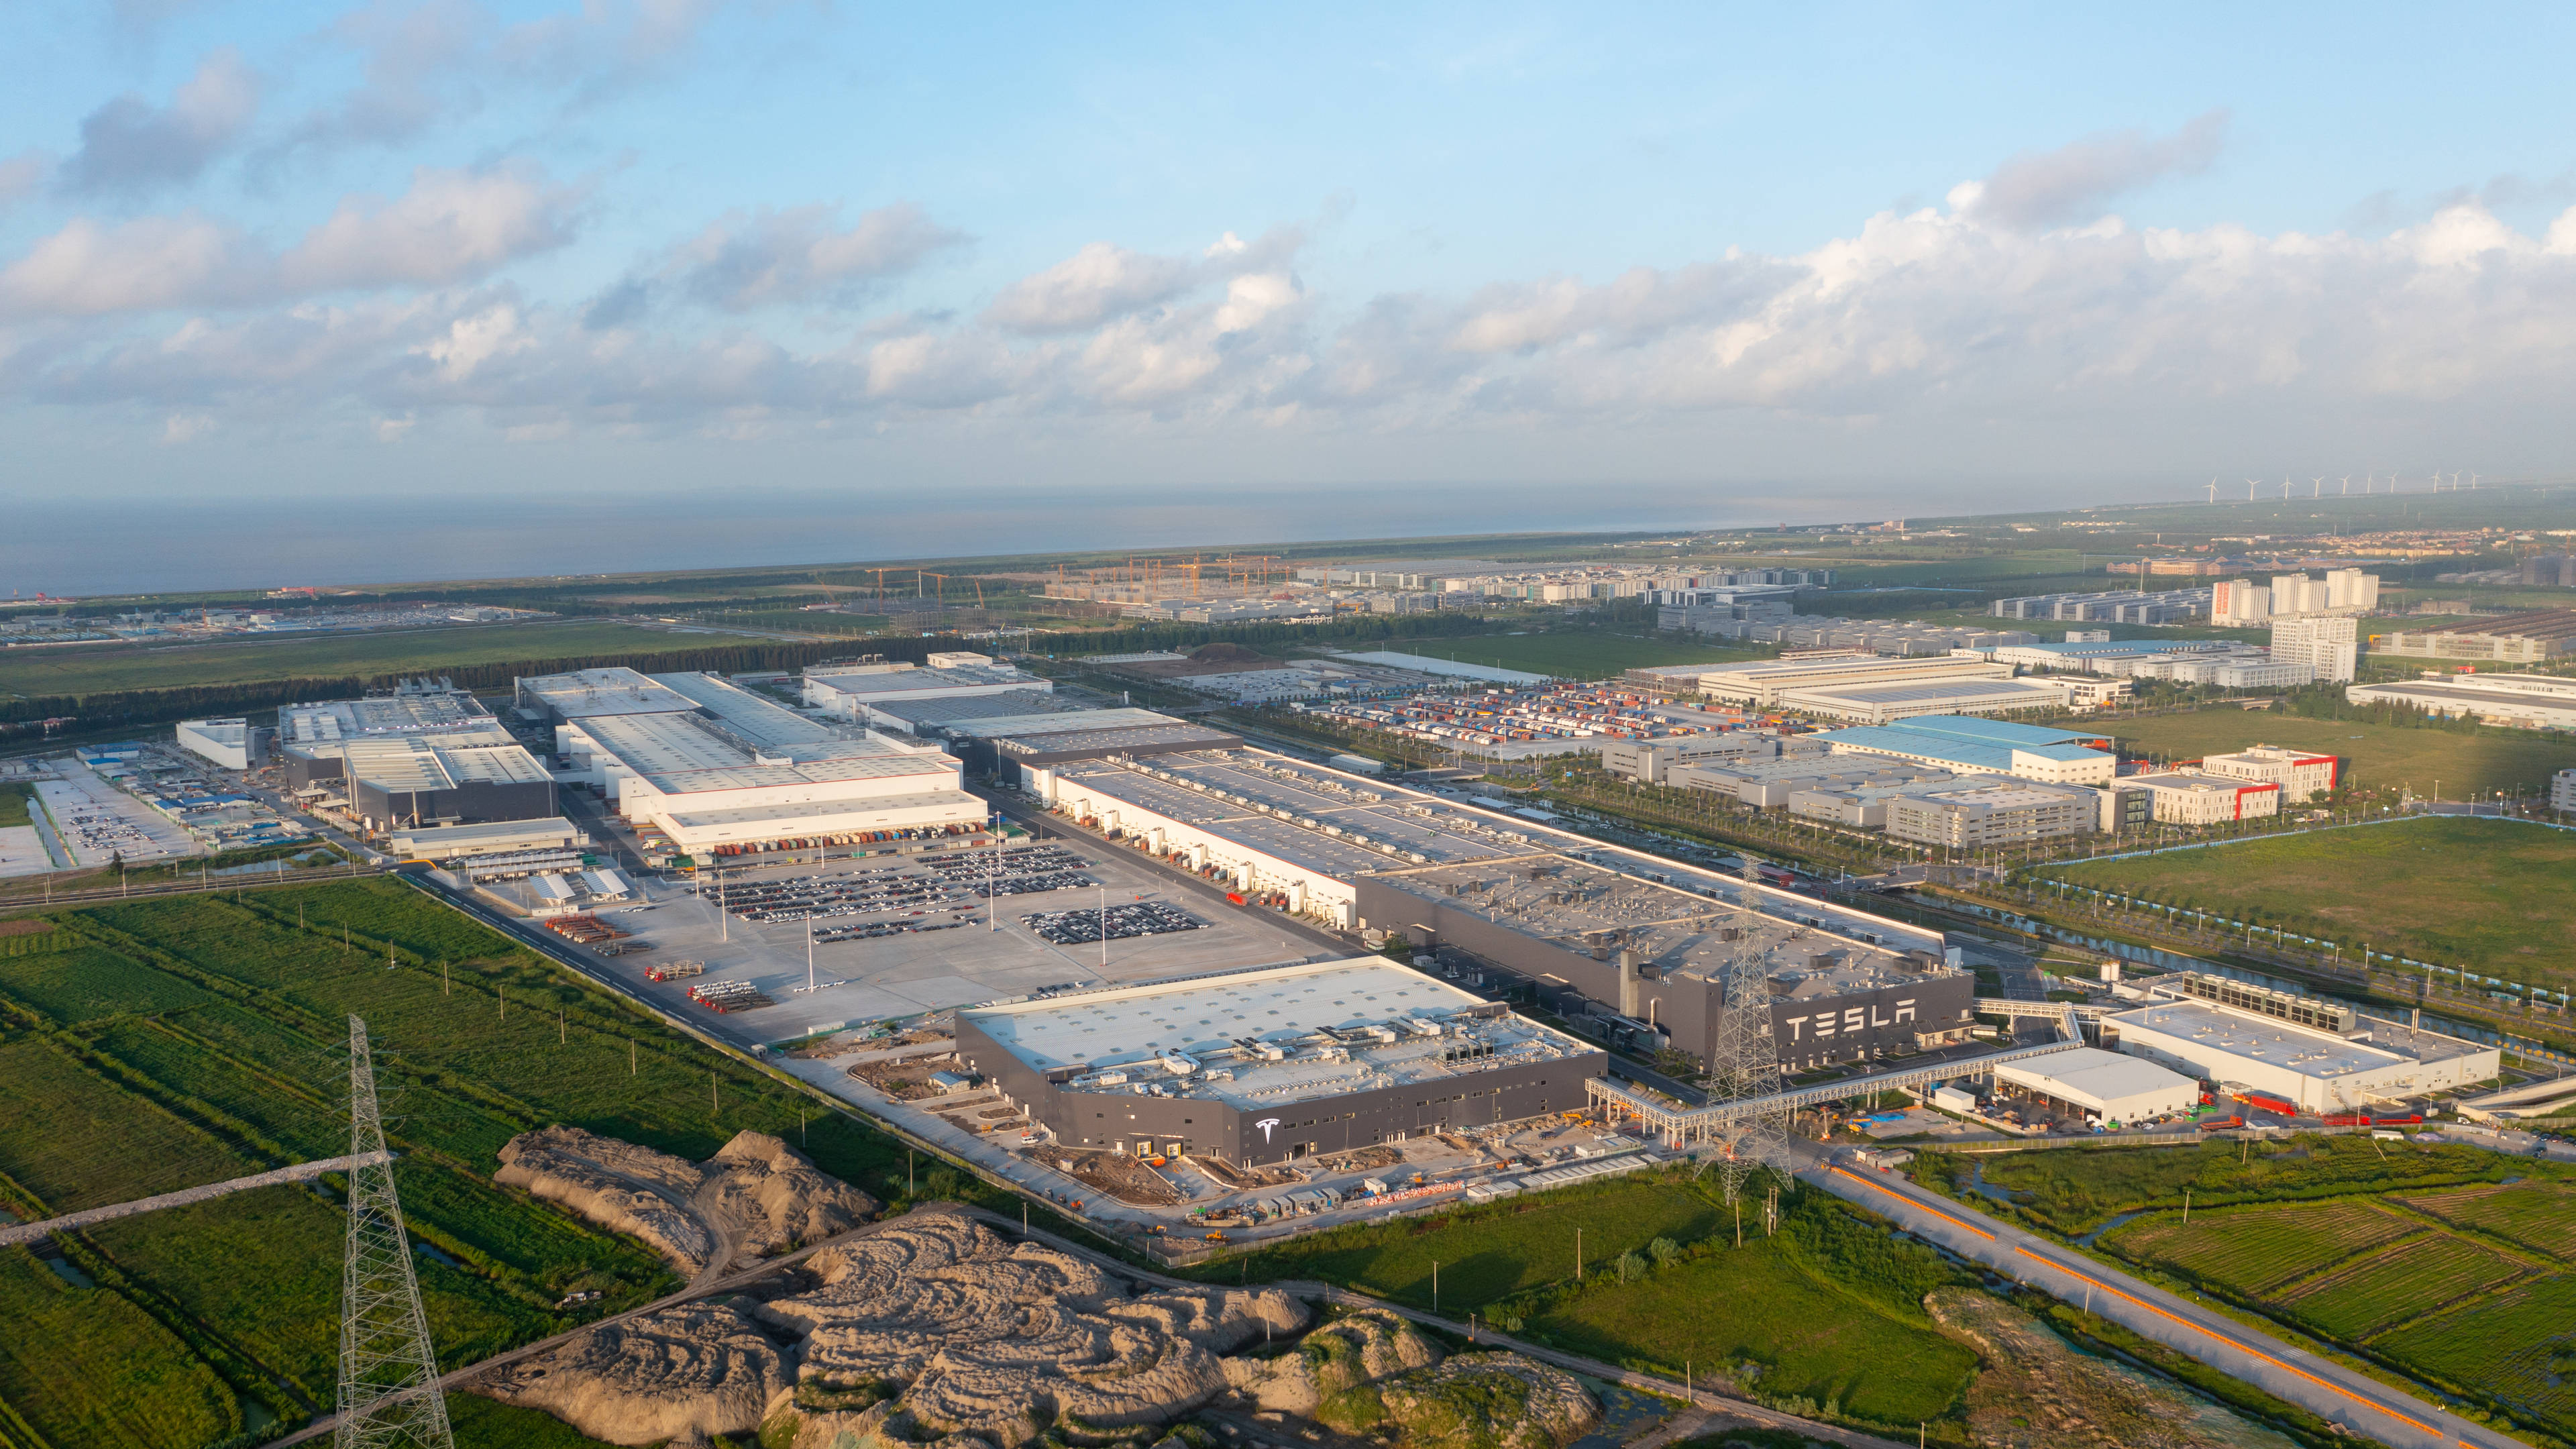 "特斯拉上海超级工厂正常生产情况下,年产能已达到45万辆.